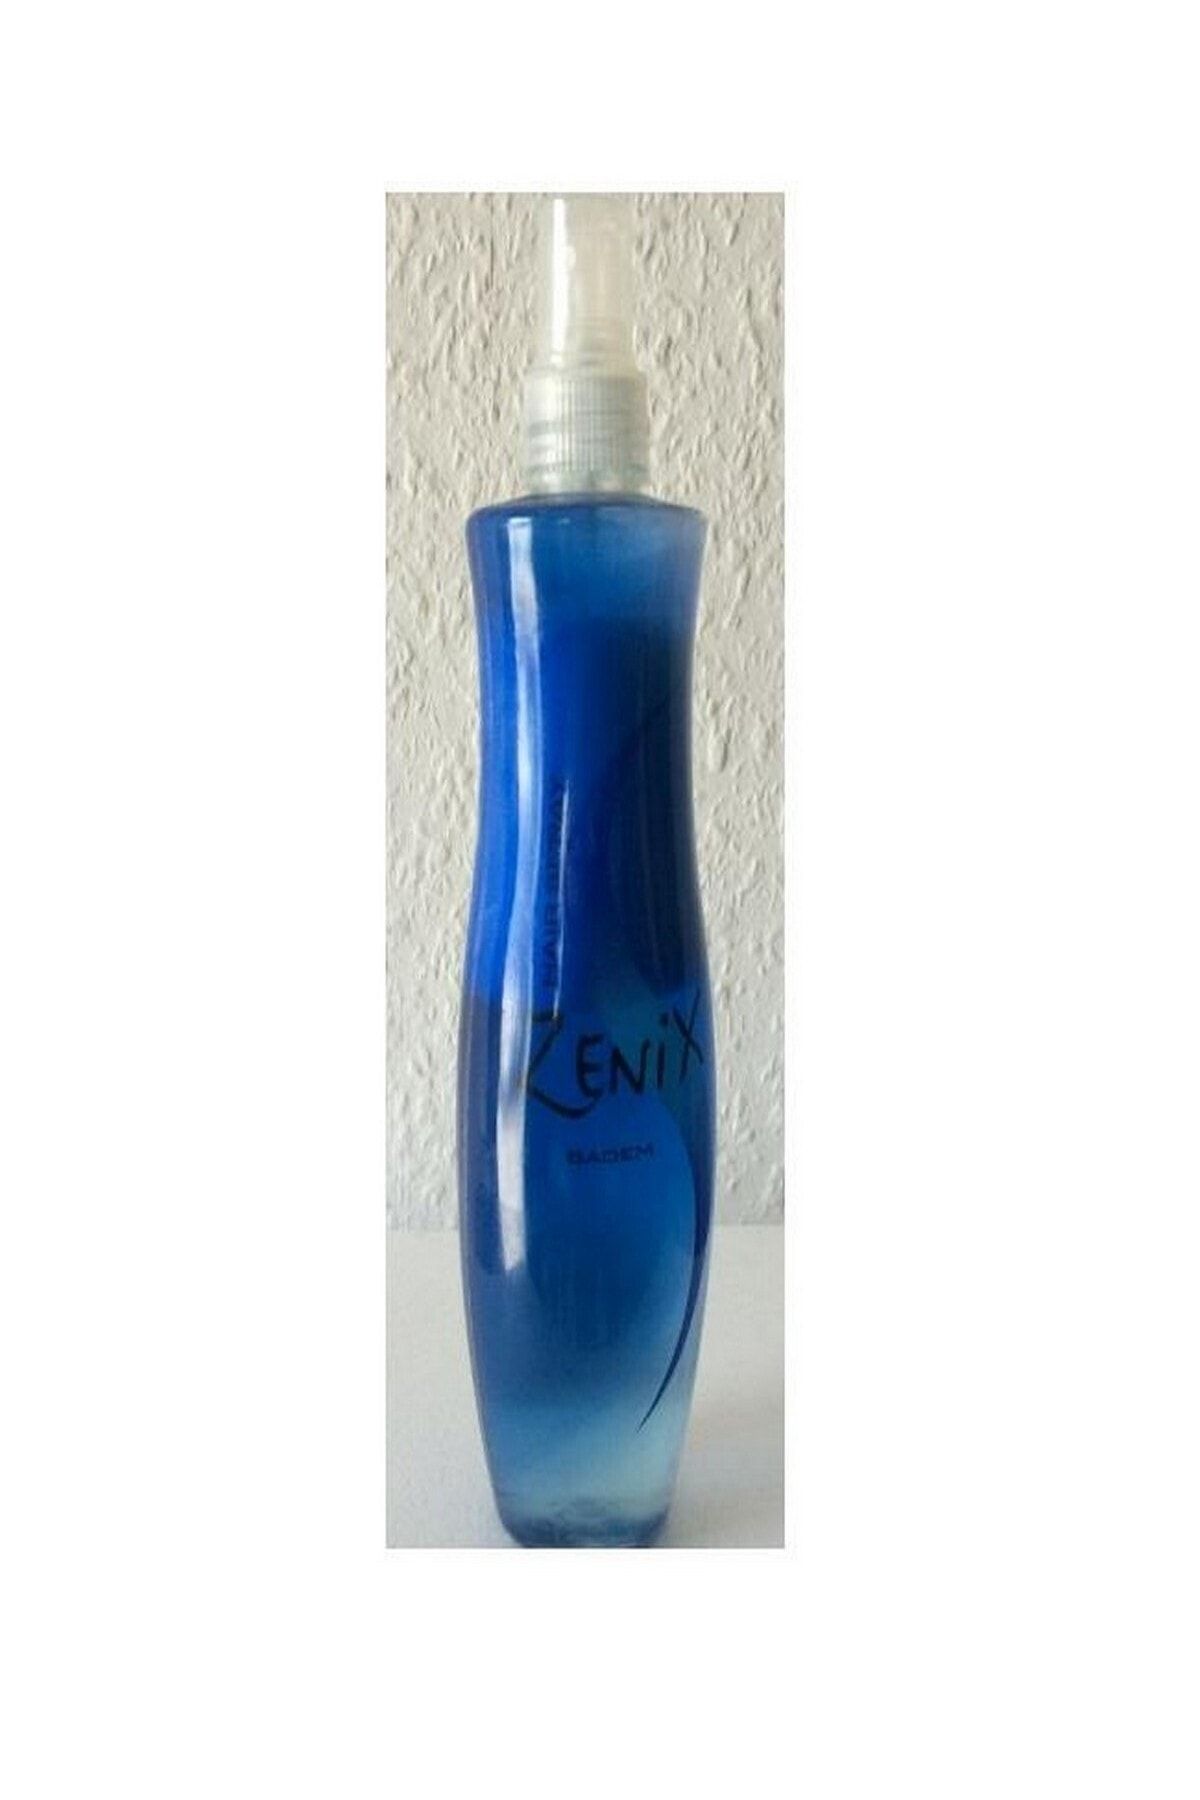 Zenix Çift Fazlı Badem Özlü Fön Suyu (Mavi) 350 ml